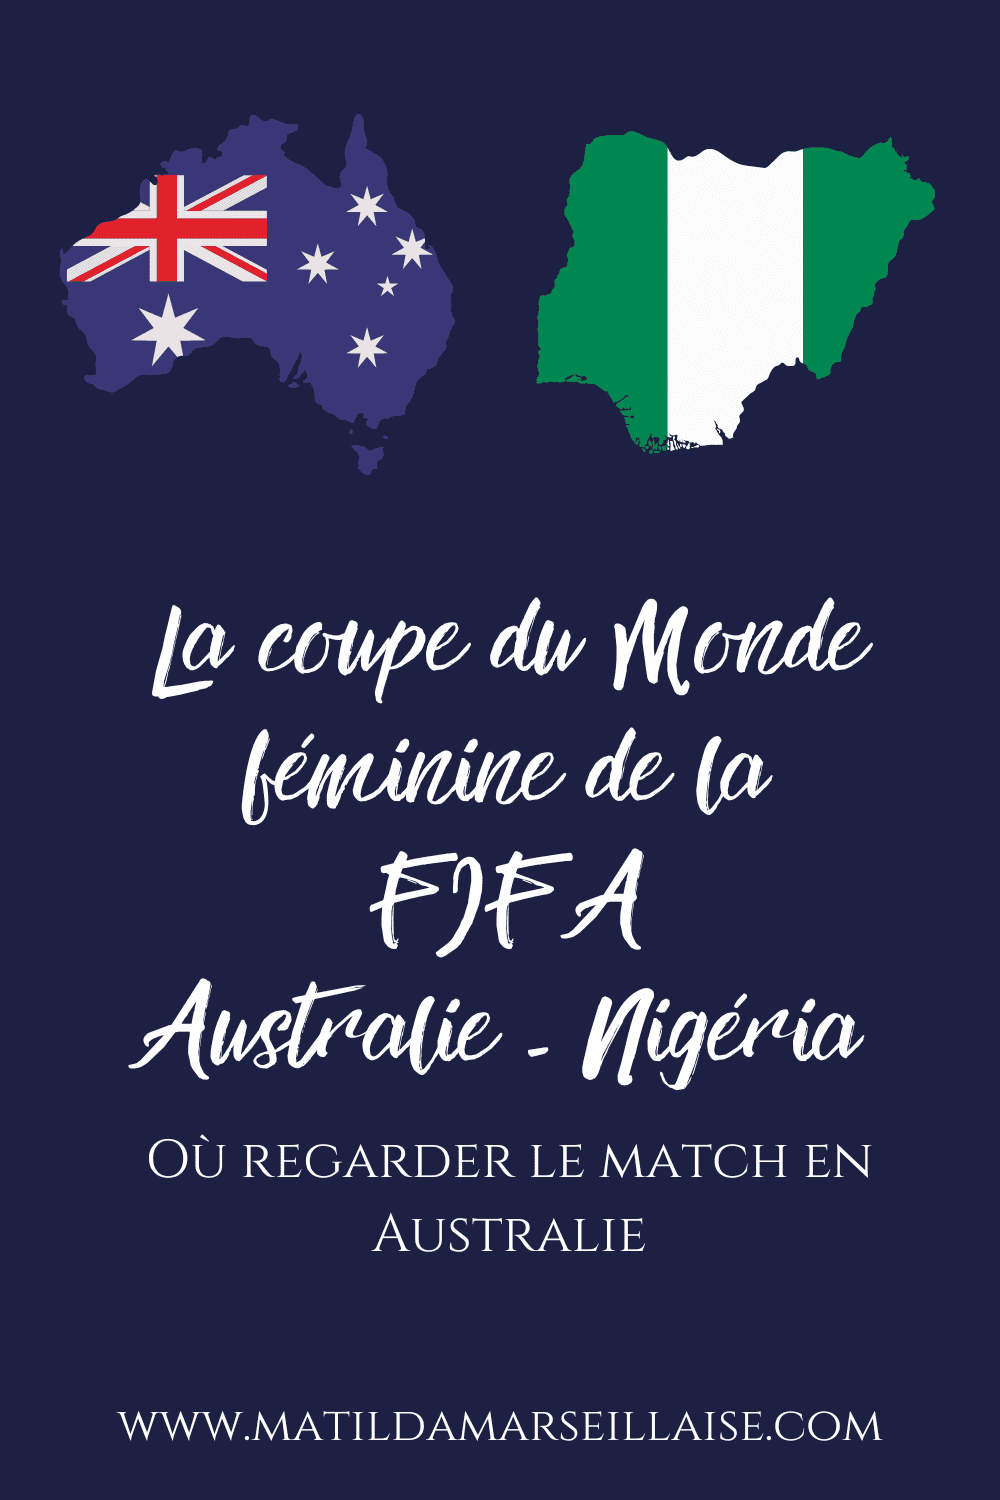 Australie - Nigéria en Australie